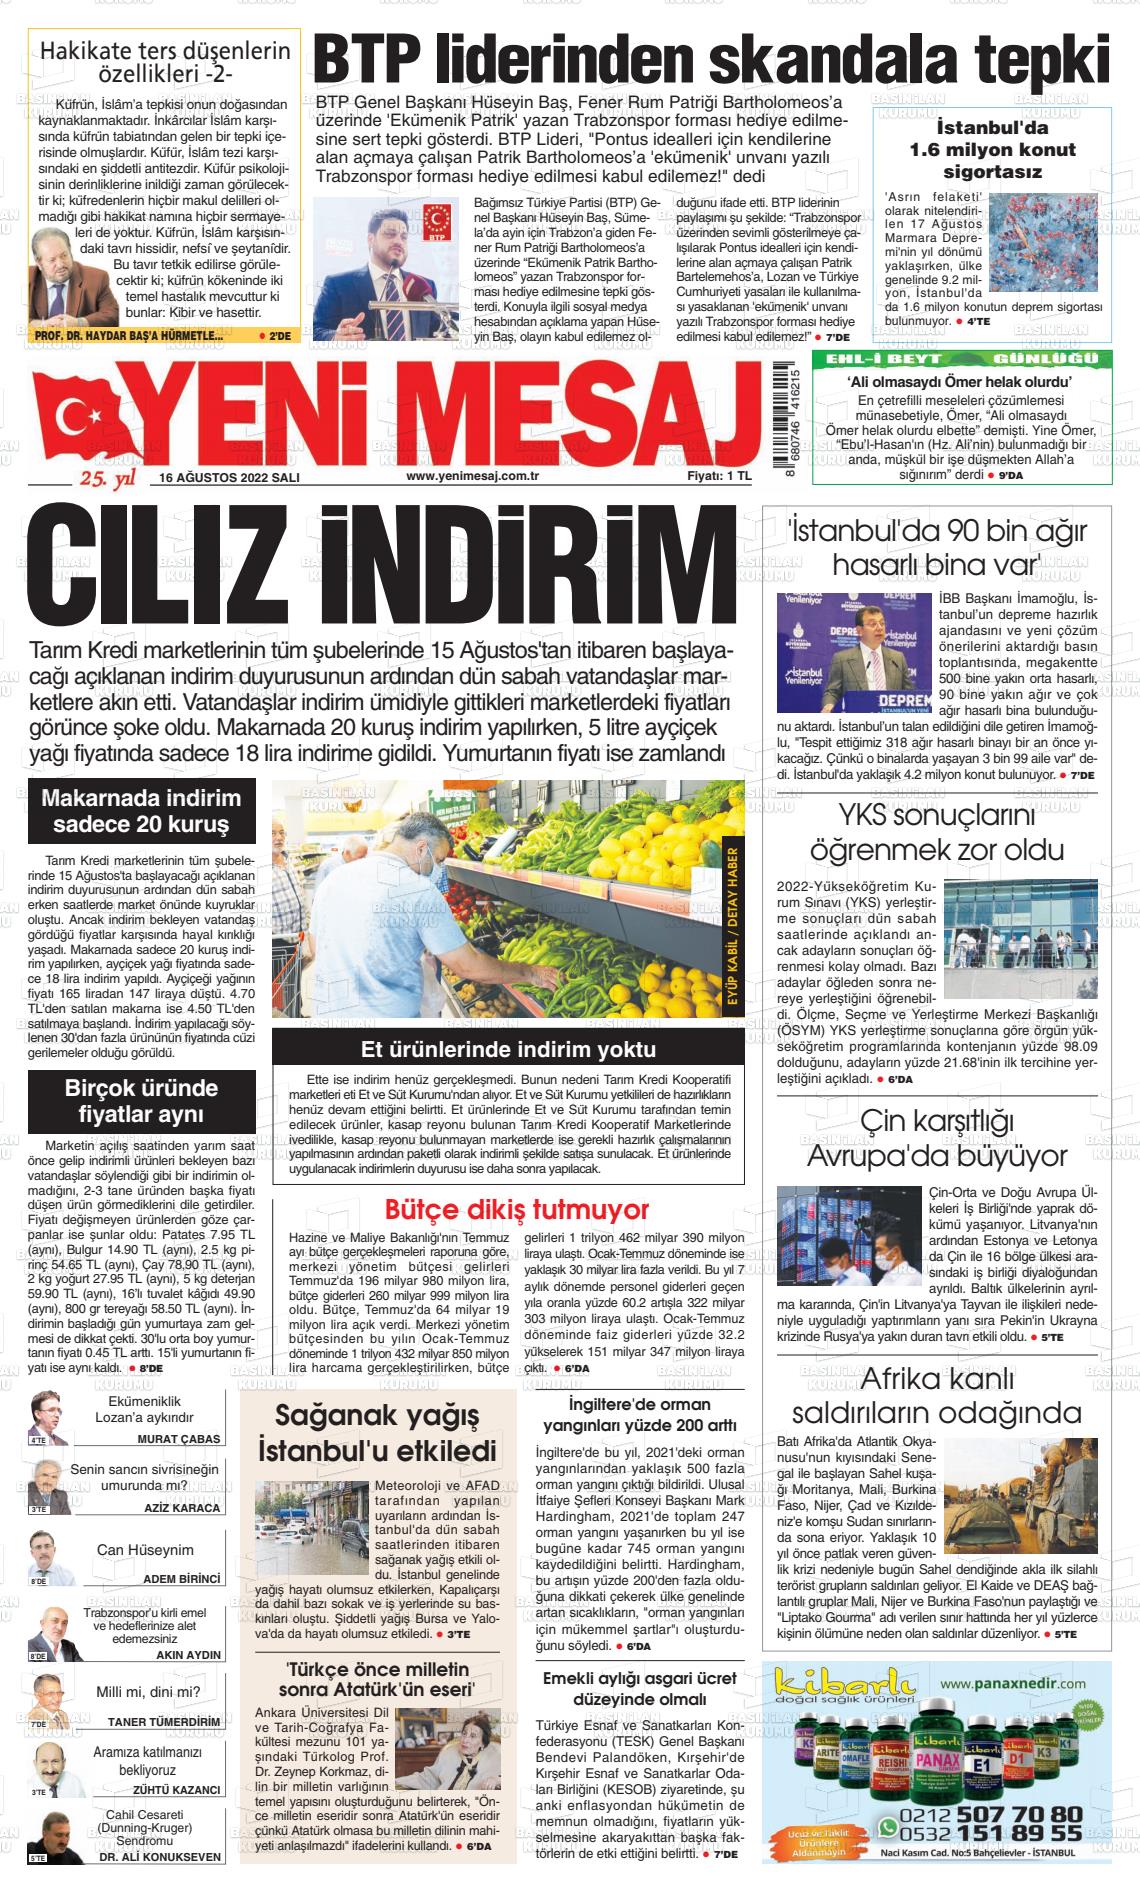 16 Ağustos 2022 Yeni Mesaj Gazete Manşeti